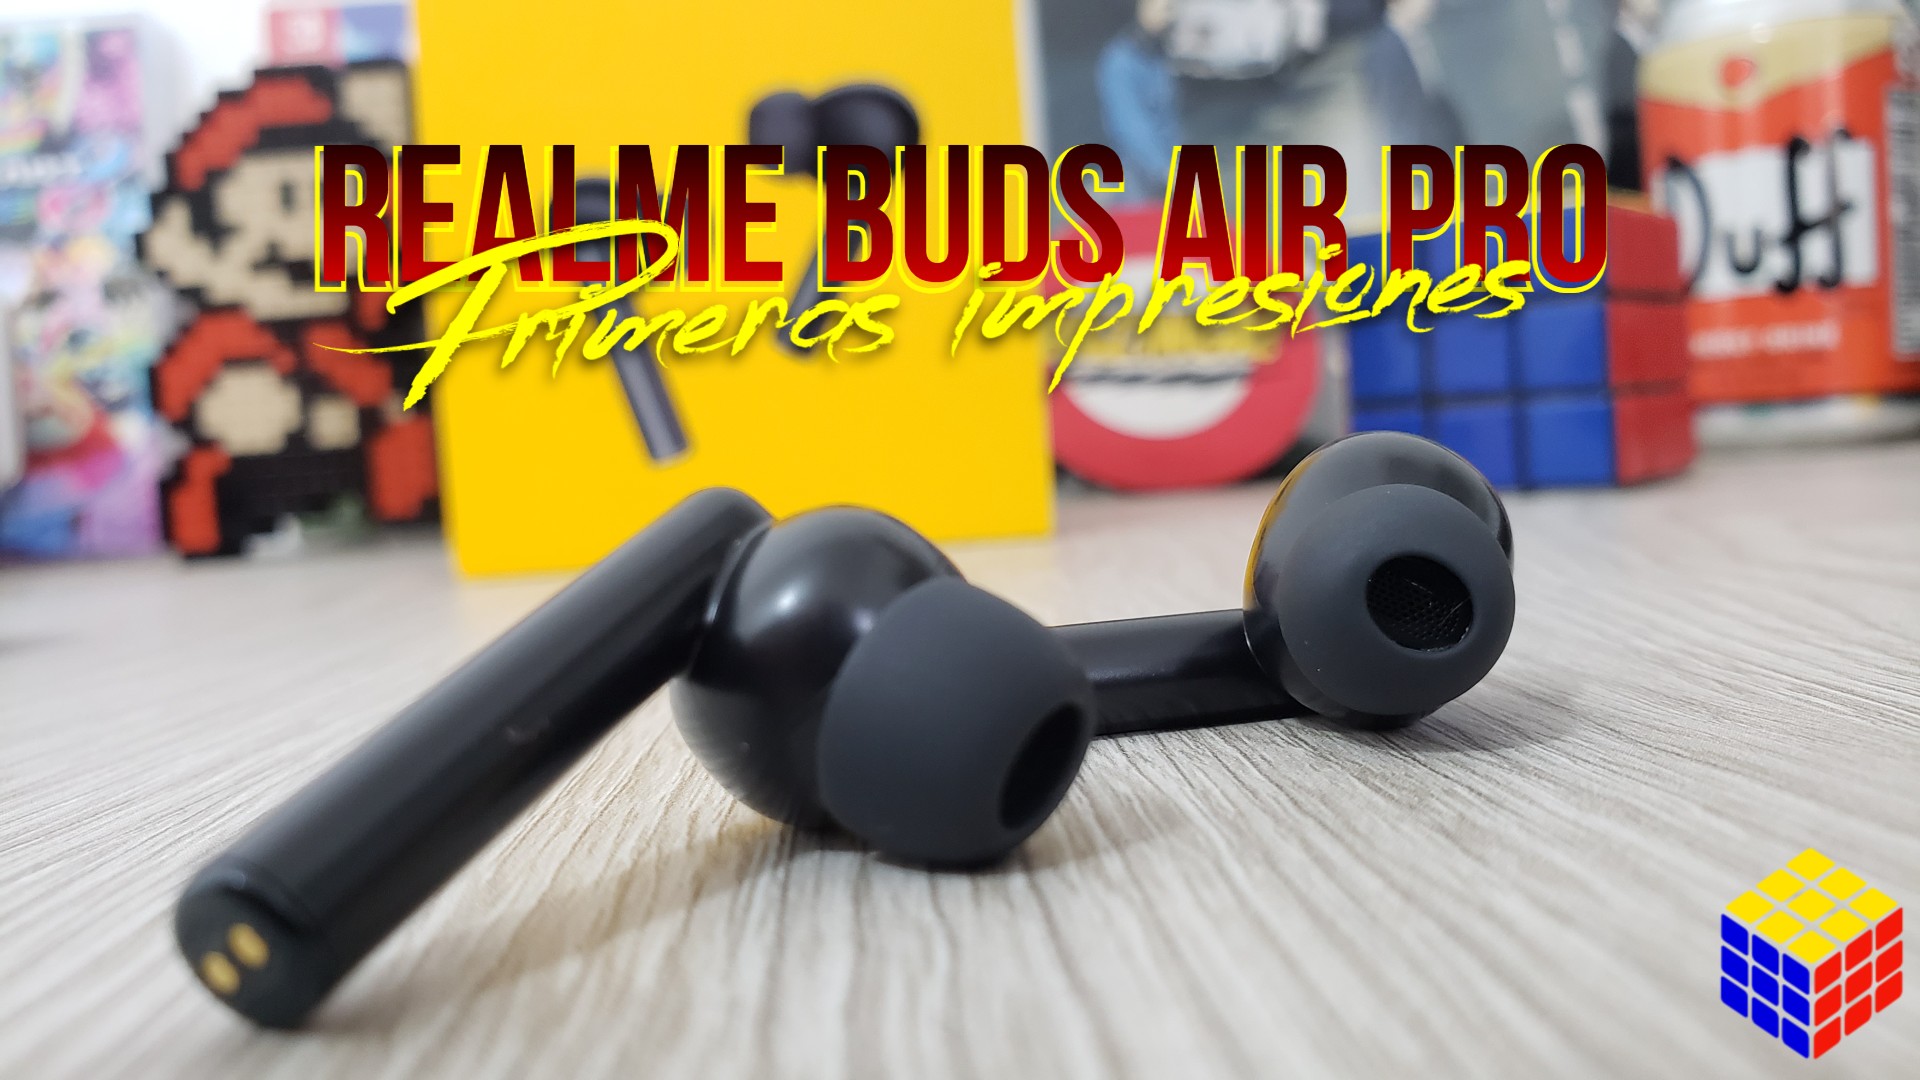 Realme Buds Air Pro